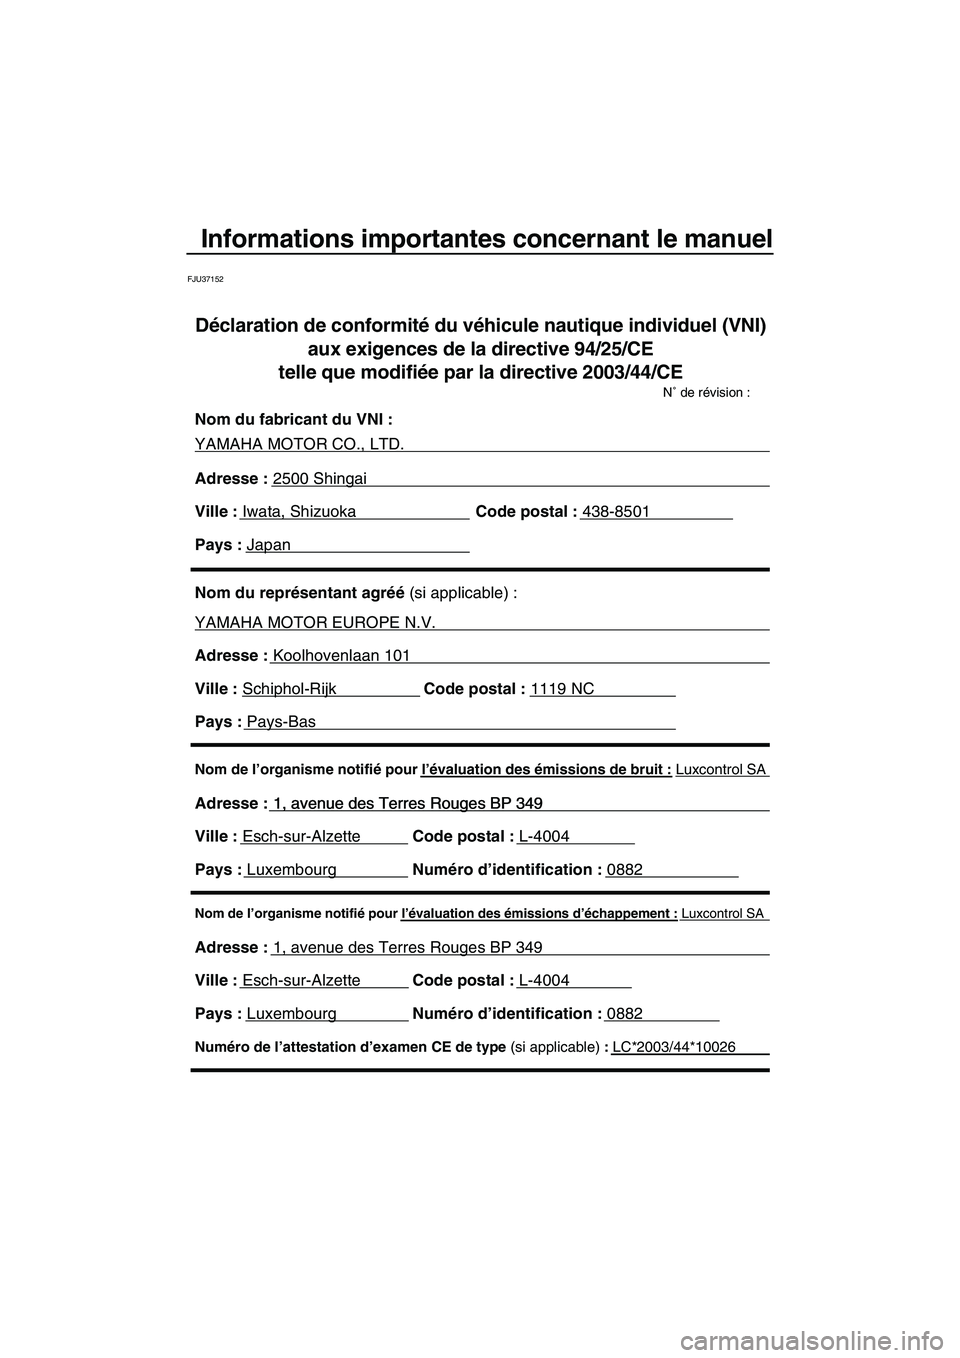 YAMAHA FX SHO 2010  Notices Demploi (in French) Informations importantes concernant le manuel
FJU37152
Nom de l’organisme notifié pour l’évaluation des émissions d’échappement : Luxcontrol SA
Adresse : 1, avenue des Terres Rouges BP 349 
